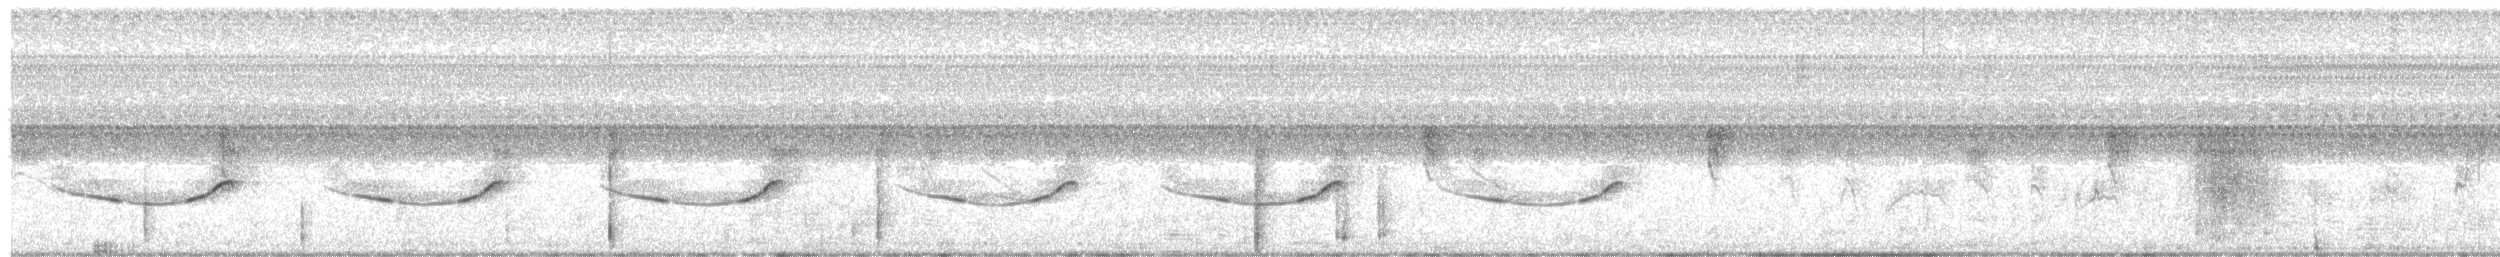 Ak Karınlı Tohumcul - ML132710841